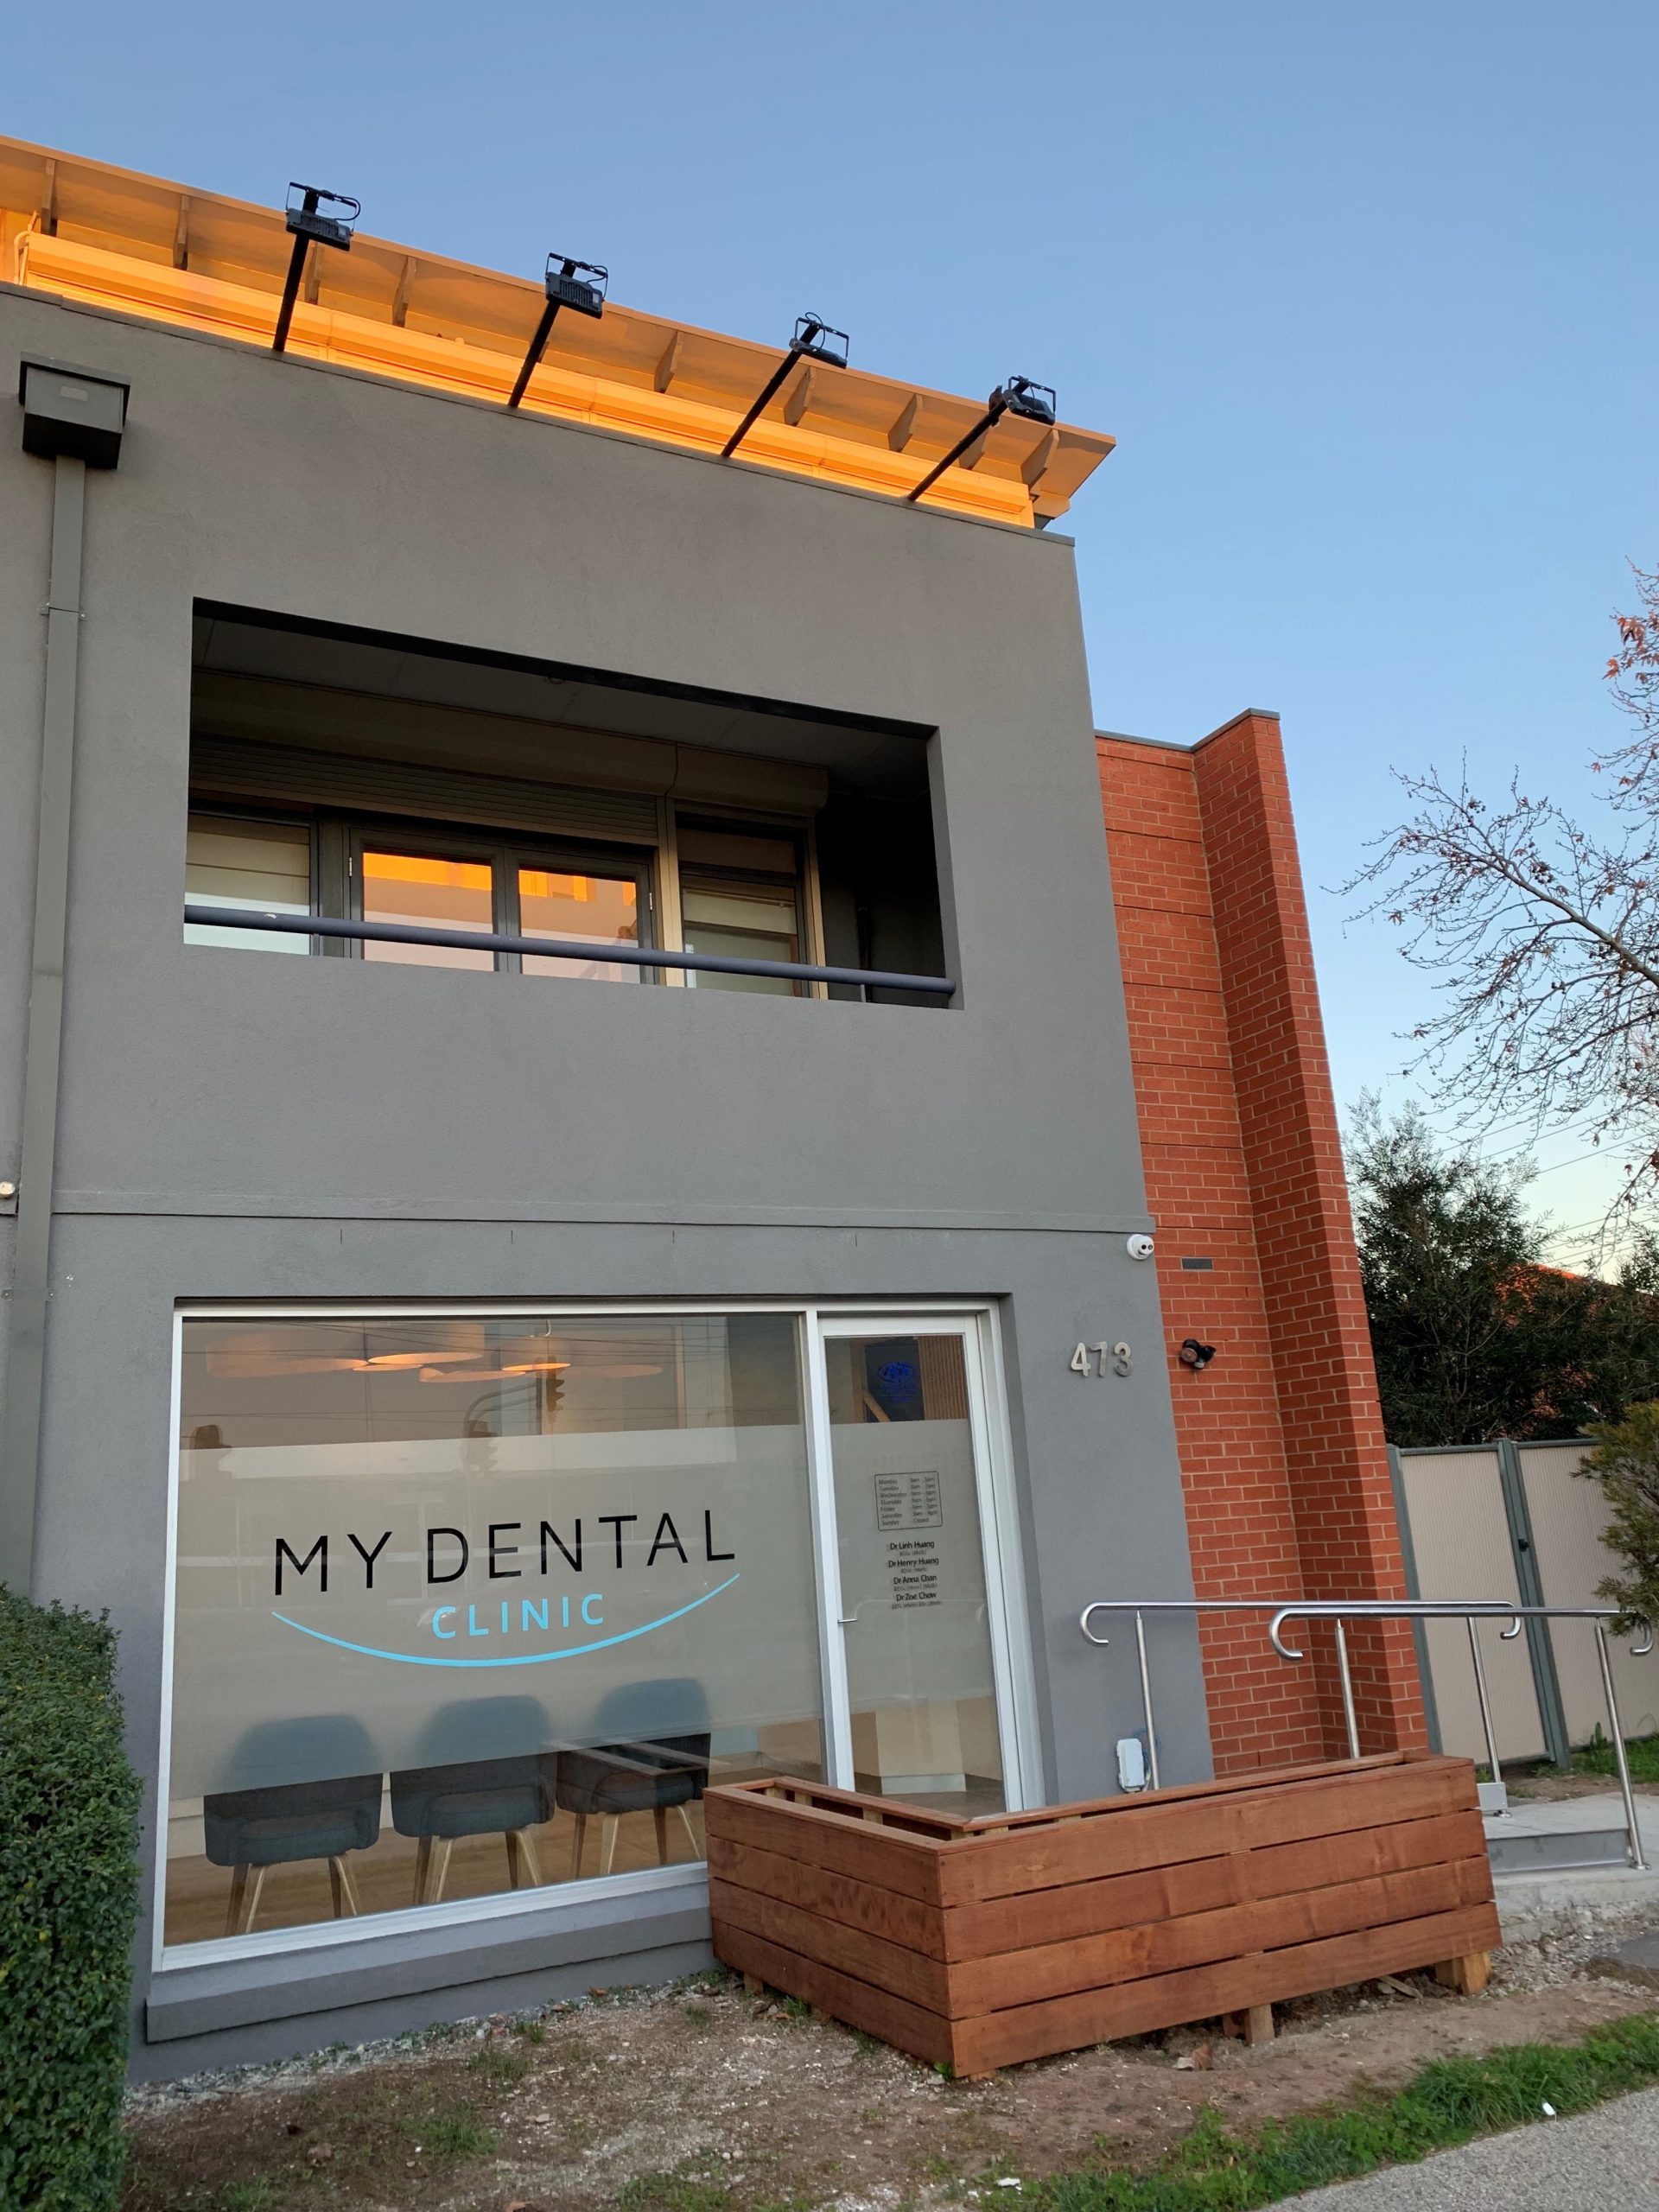 My Dental Clinic - DentalFind.com.au